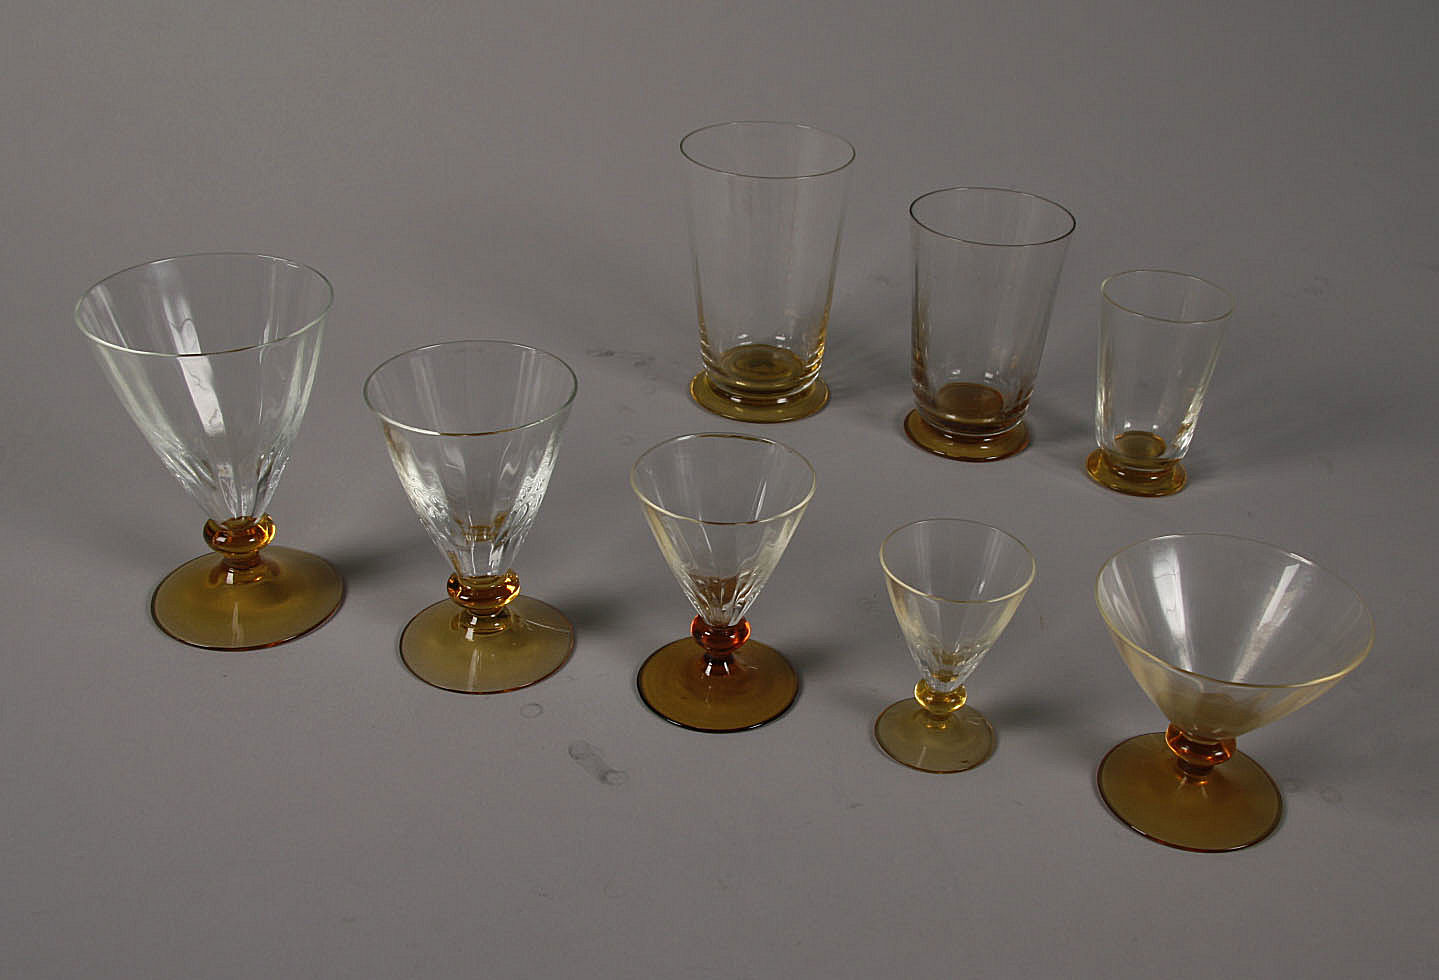 Holmegaard, Samling glas, (75) | Lauritz.com